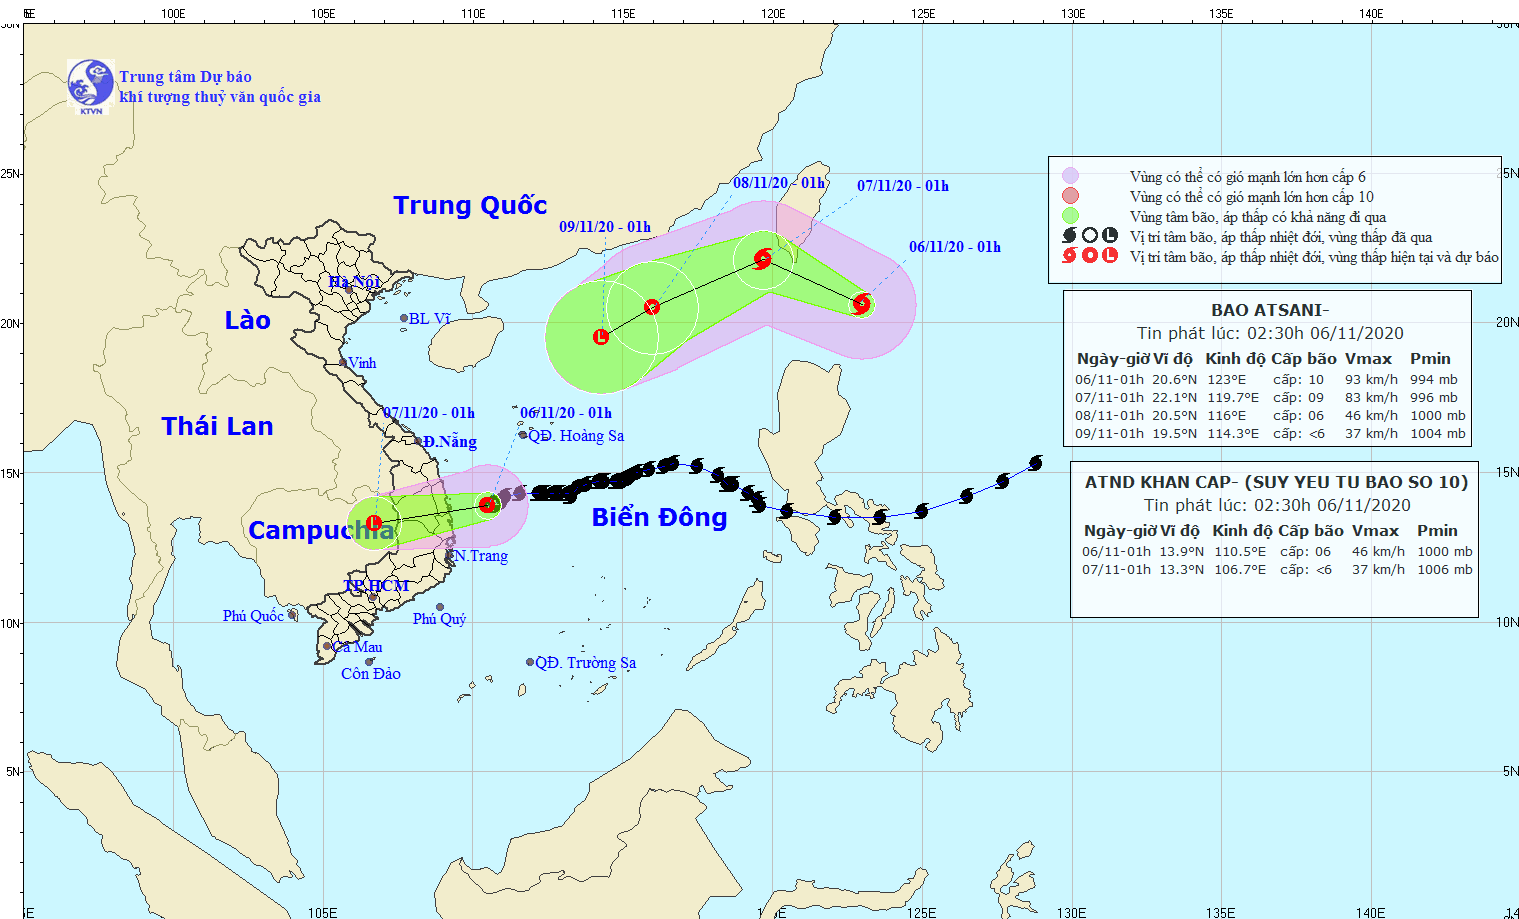 Áp thấp nhiệt đới sẽ gây mưa lớn từ Quảng Bình đến Phú Yên và các tỉnh phía Bắc Tây Nguyên trong ngày và đêm nay.